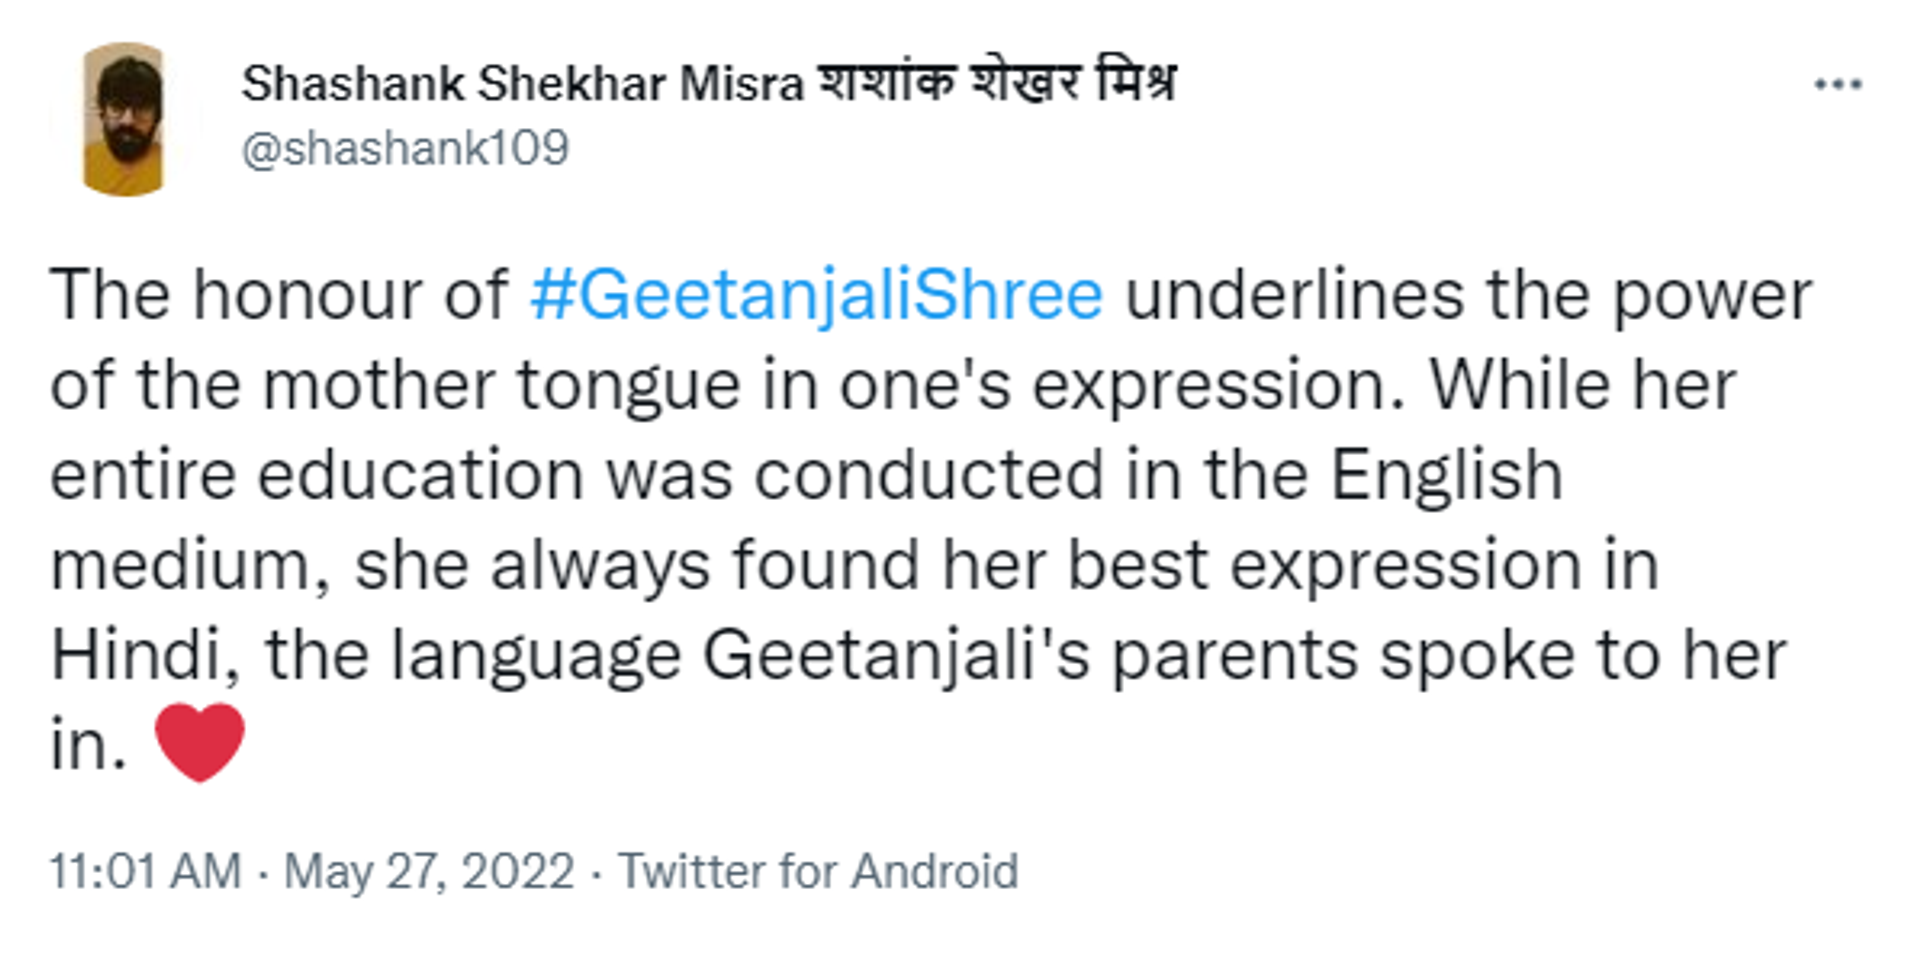 Netizen Congratulated Geetanjali Shree for Her Achievement - Sputnik International, 1920, 27.05.2022